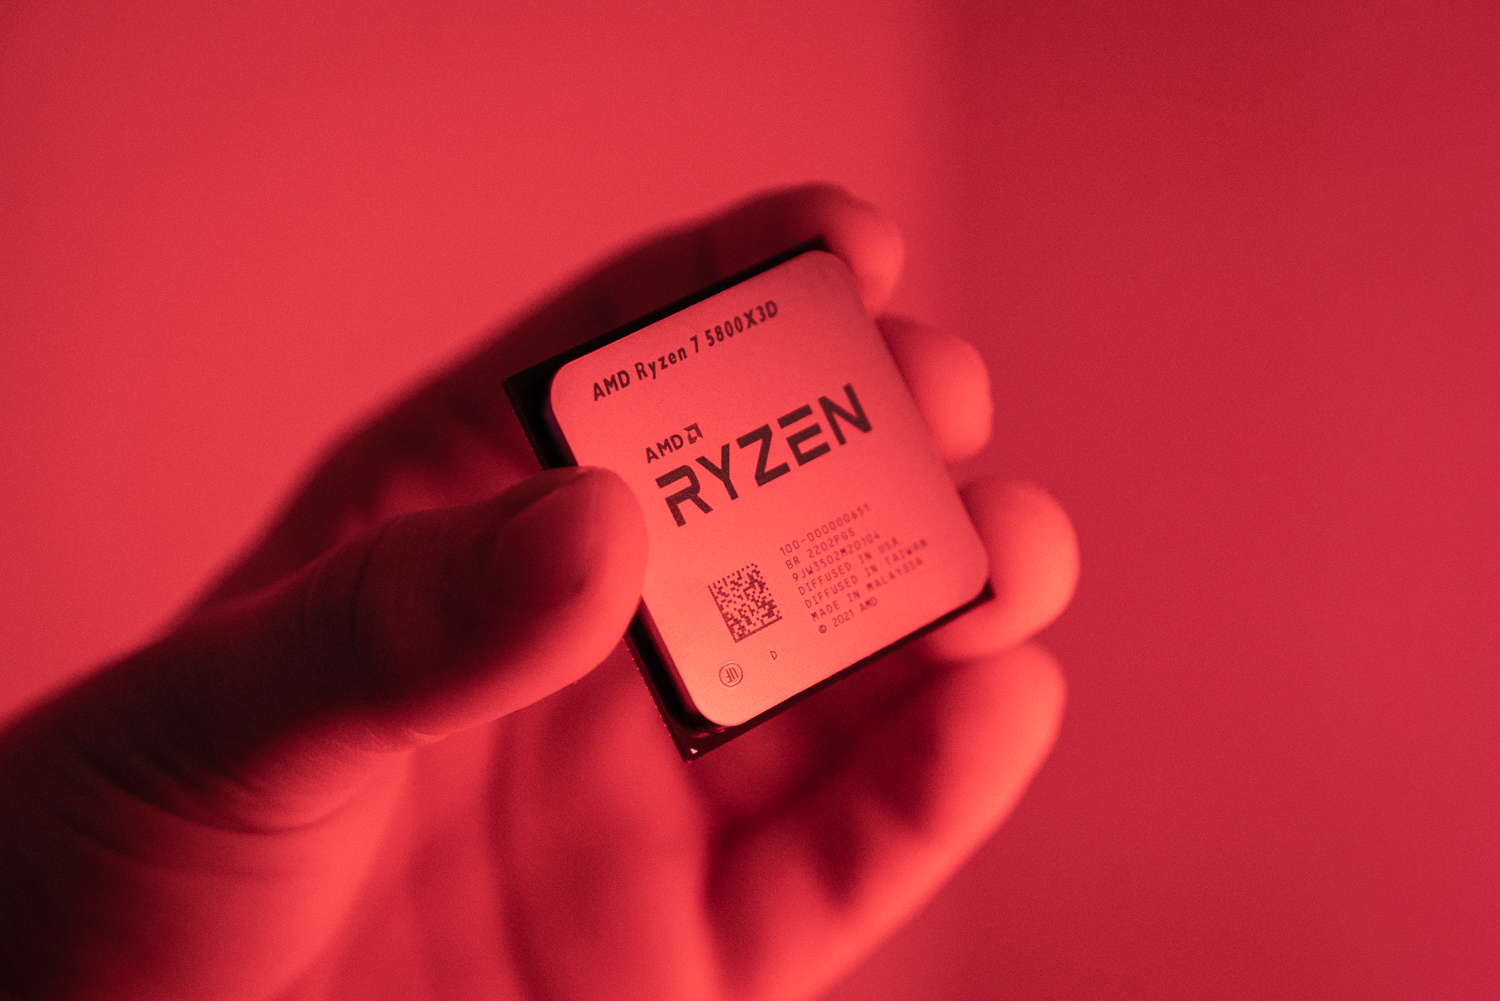 شخصی که Ryzen 7 5800X3D را در چراغ قرمز نگه داشته است.